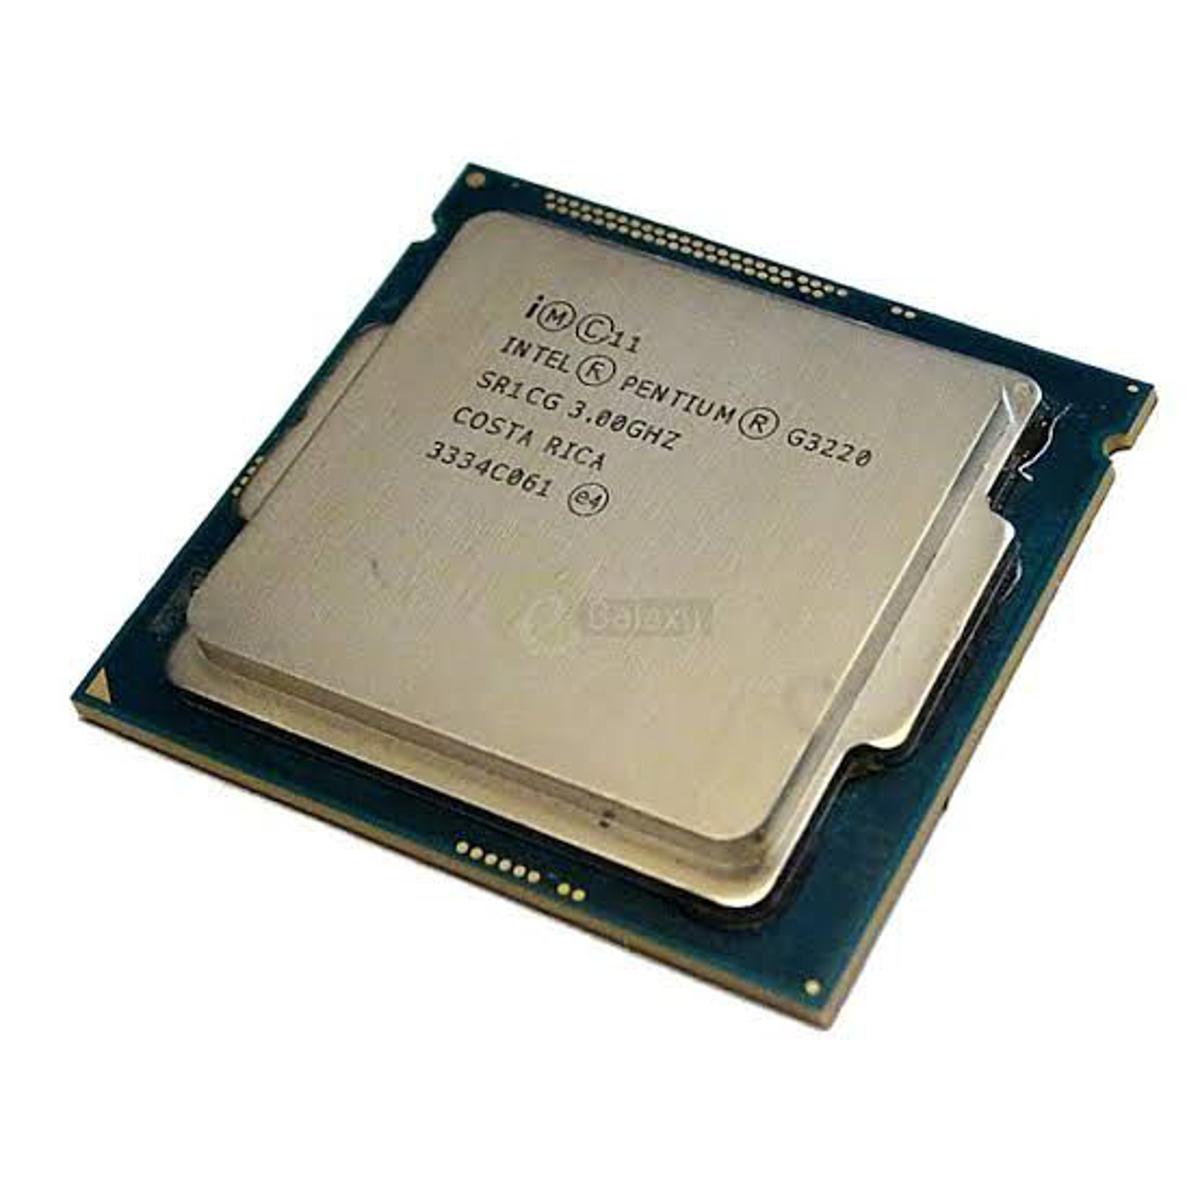 Pentium r 3.00 ghz. 1150 Intel Pentium g3220. Intel Pentium g3220 3.0GHZ. G3220 процессор. Core i3 3220 сокет.